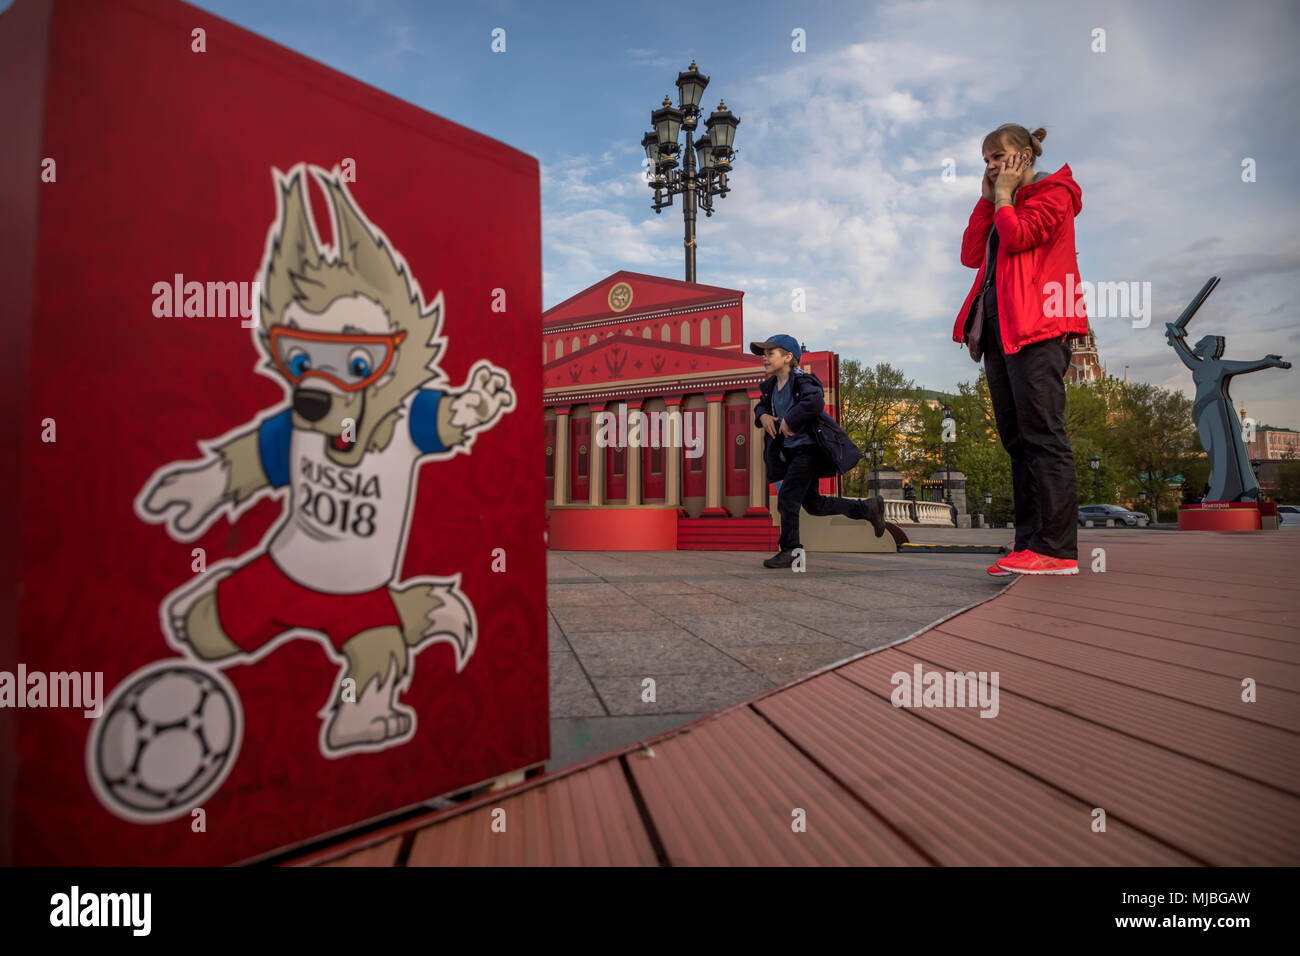 L'installation de monuments de villes participants de la Coupe du Monde 2018 sont mis en face de la salle d'exposition 'Manezh" à Moscou Banque D'Images